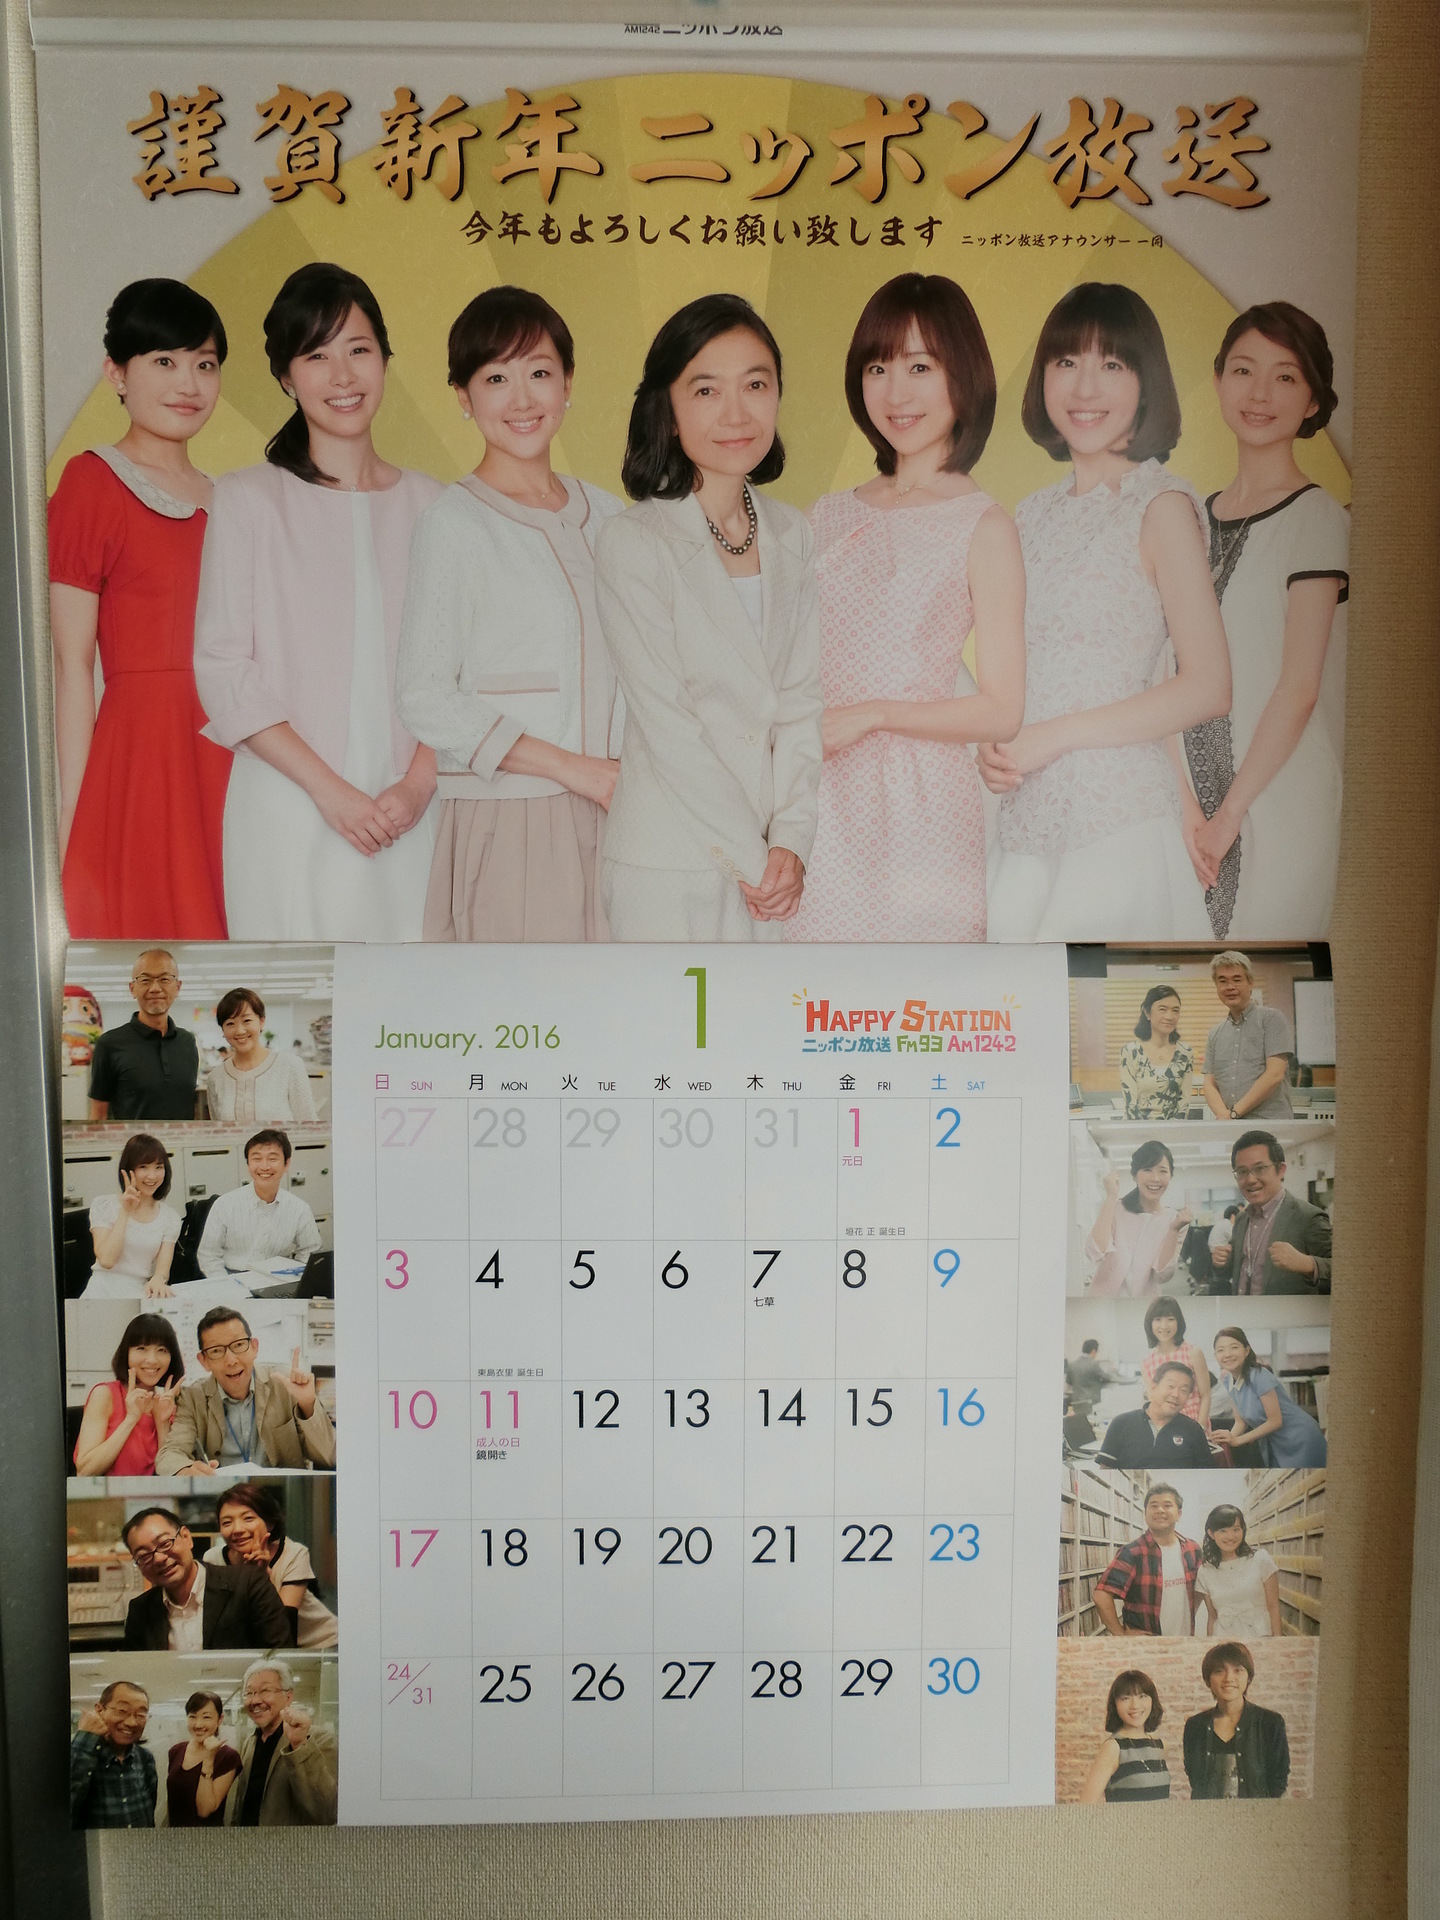 写真付き 16年1月のニッポン放送女性アナウンサーカレンダー 新行市佳 しんぎょういちか アナが初登場 7人の女性アナウンサー全員が勢ぞろいです どうぞ ご覧下さい